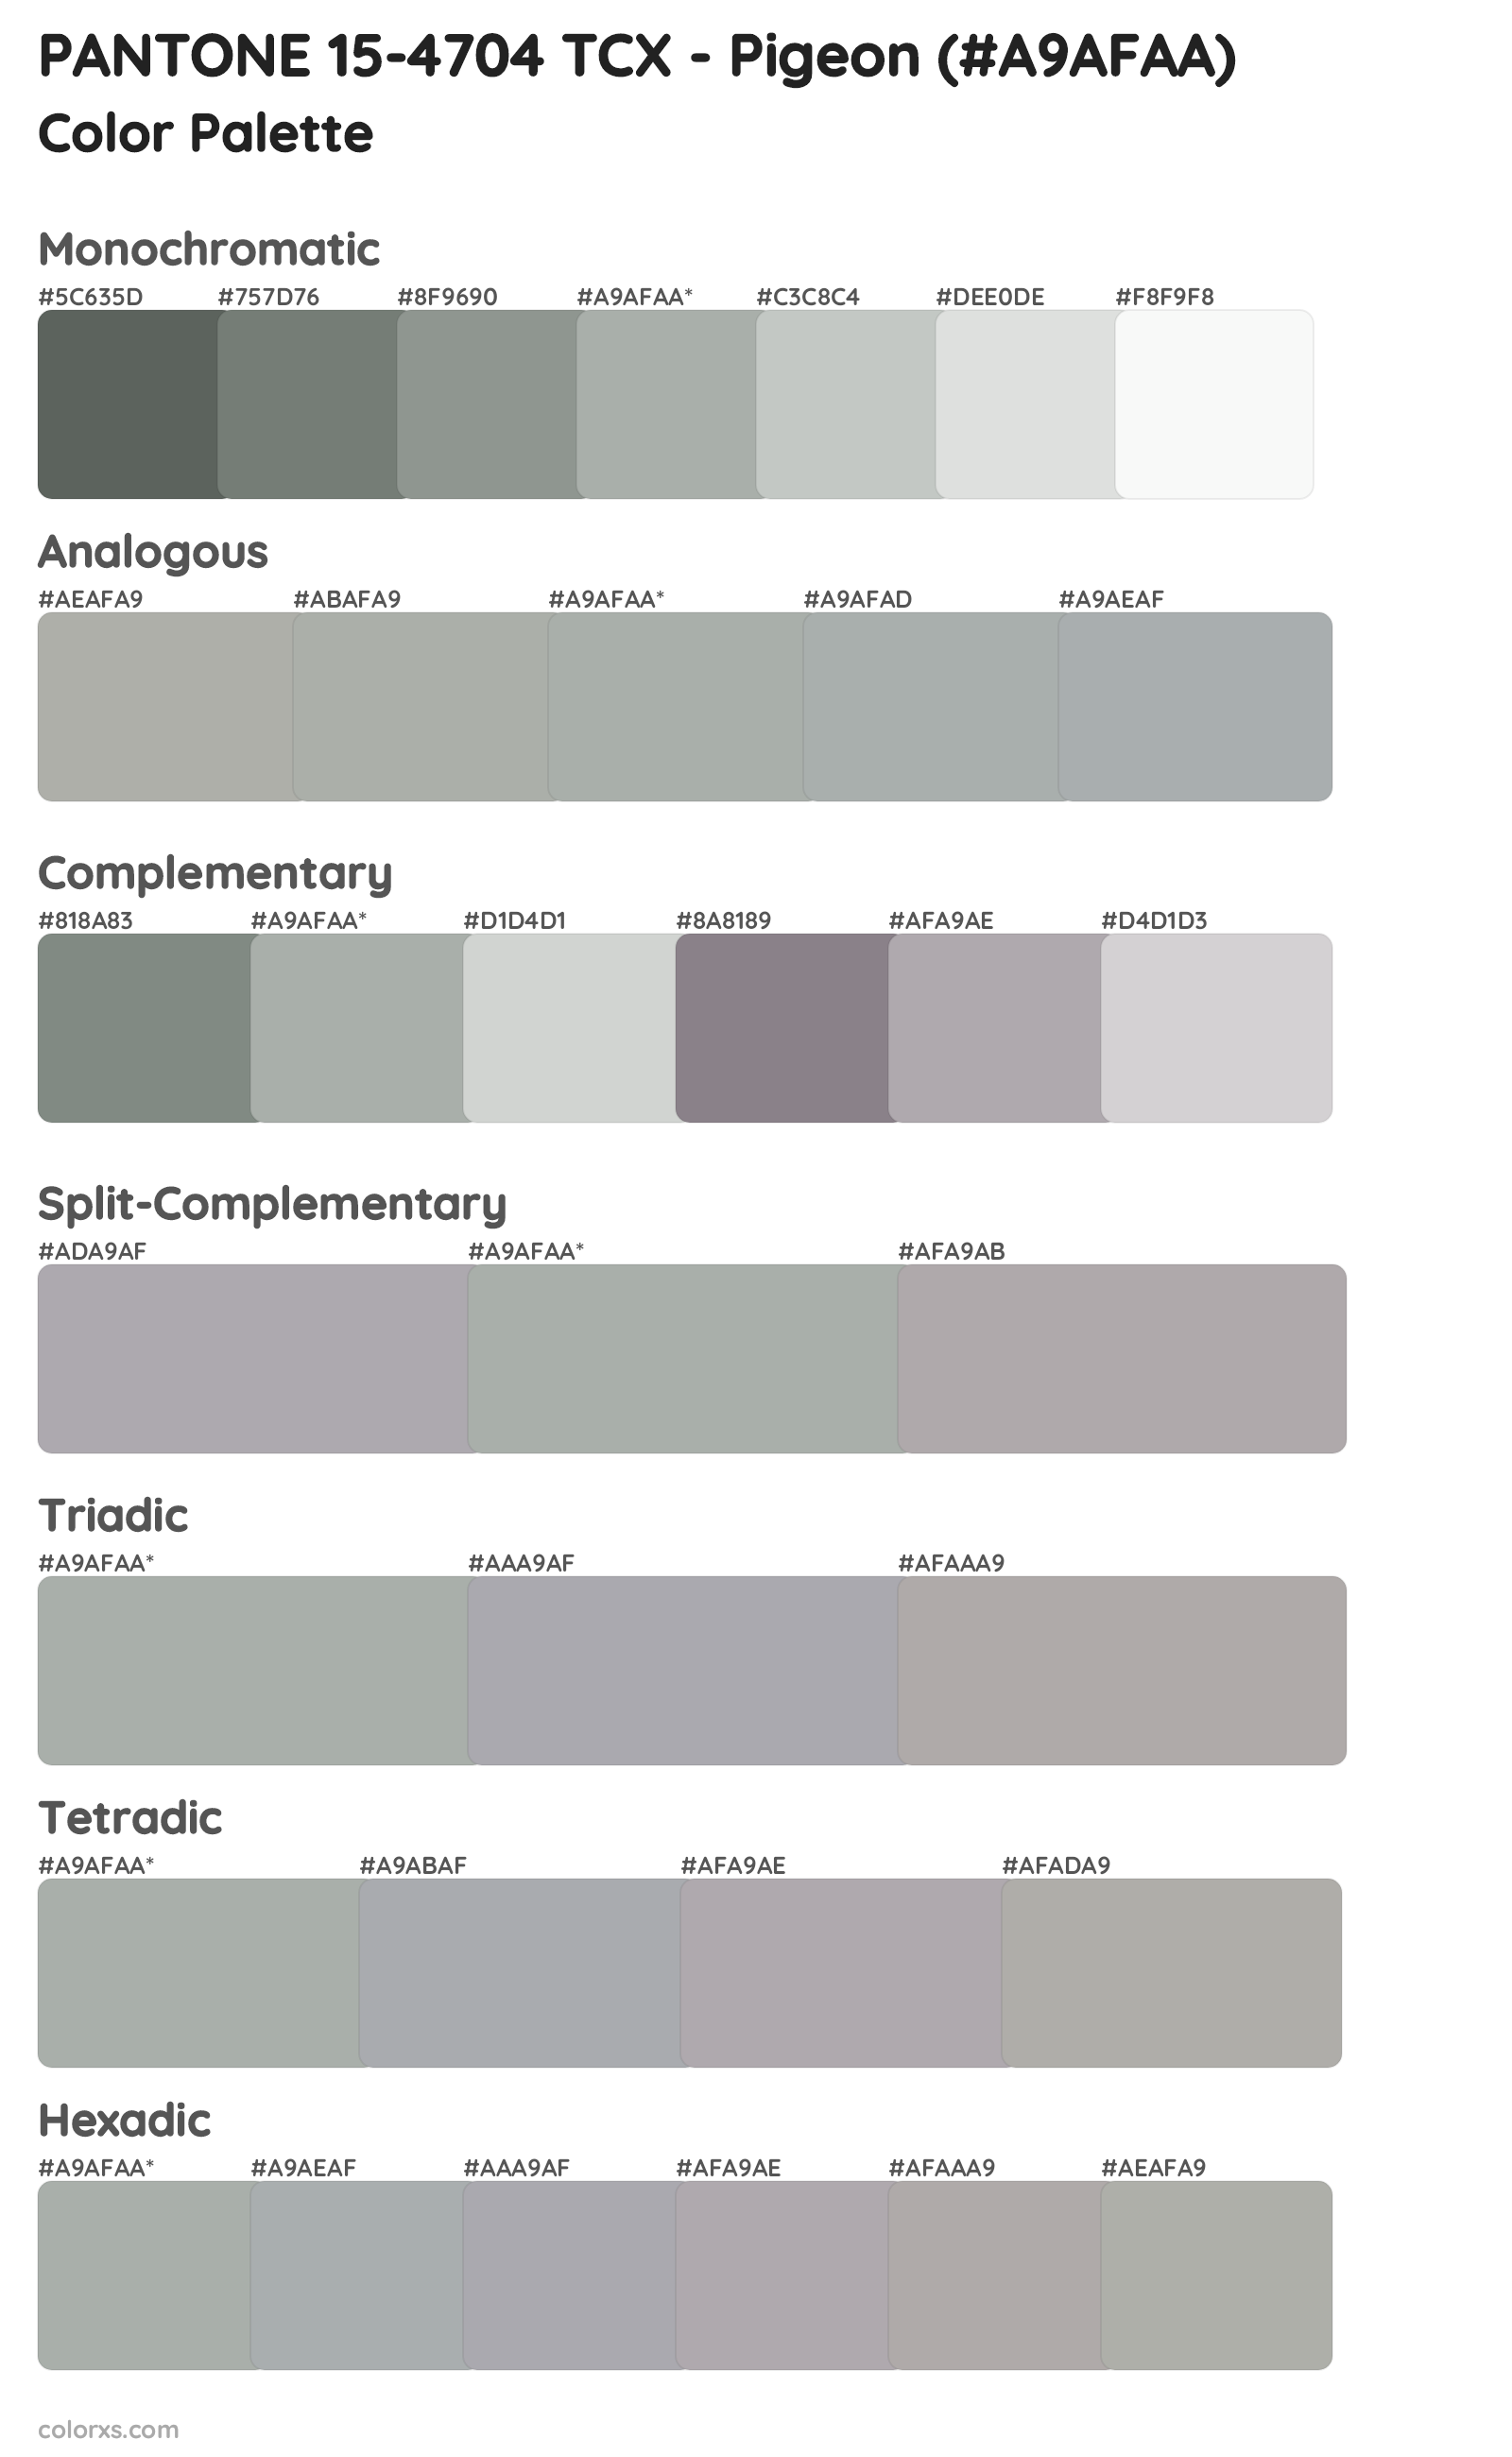 PANTONE 15-4704 TCX - Pigeon Color Scheme Palettes